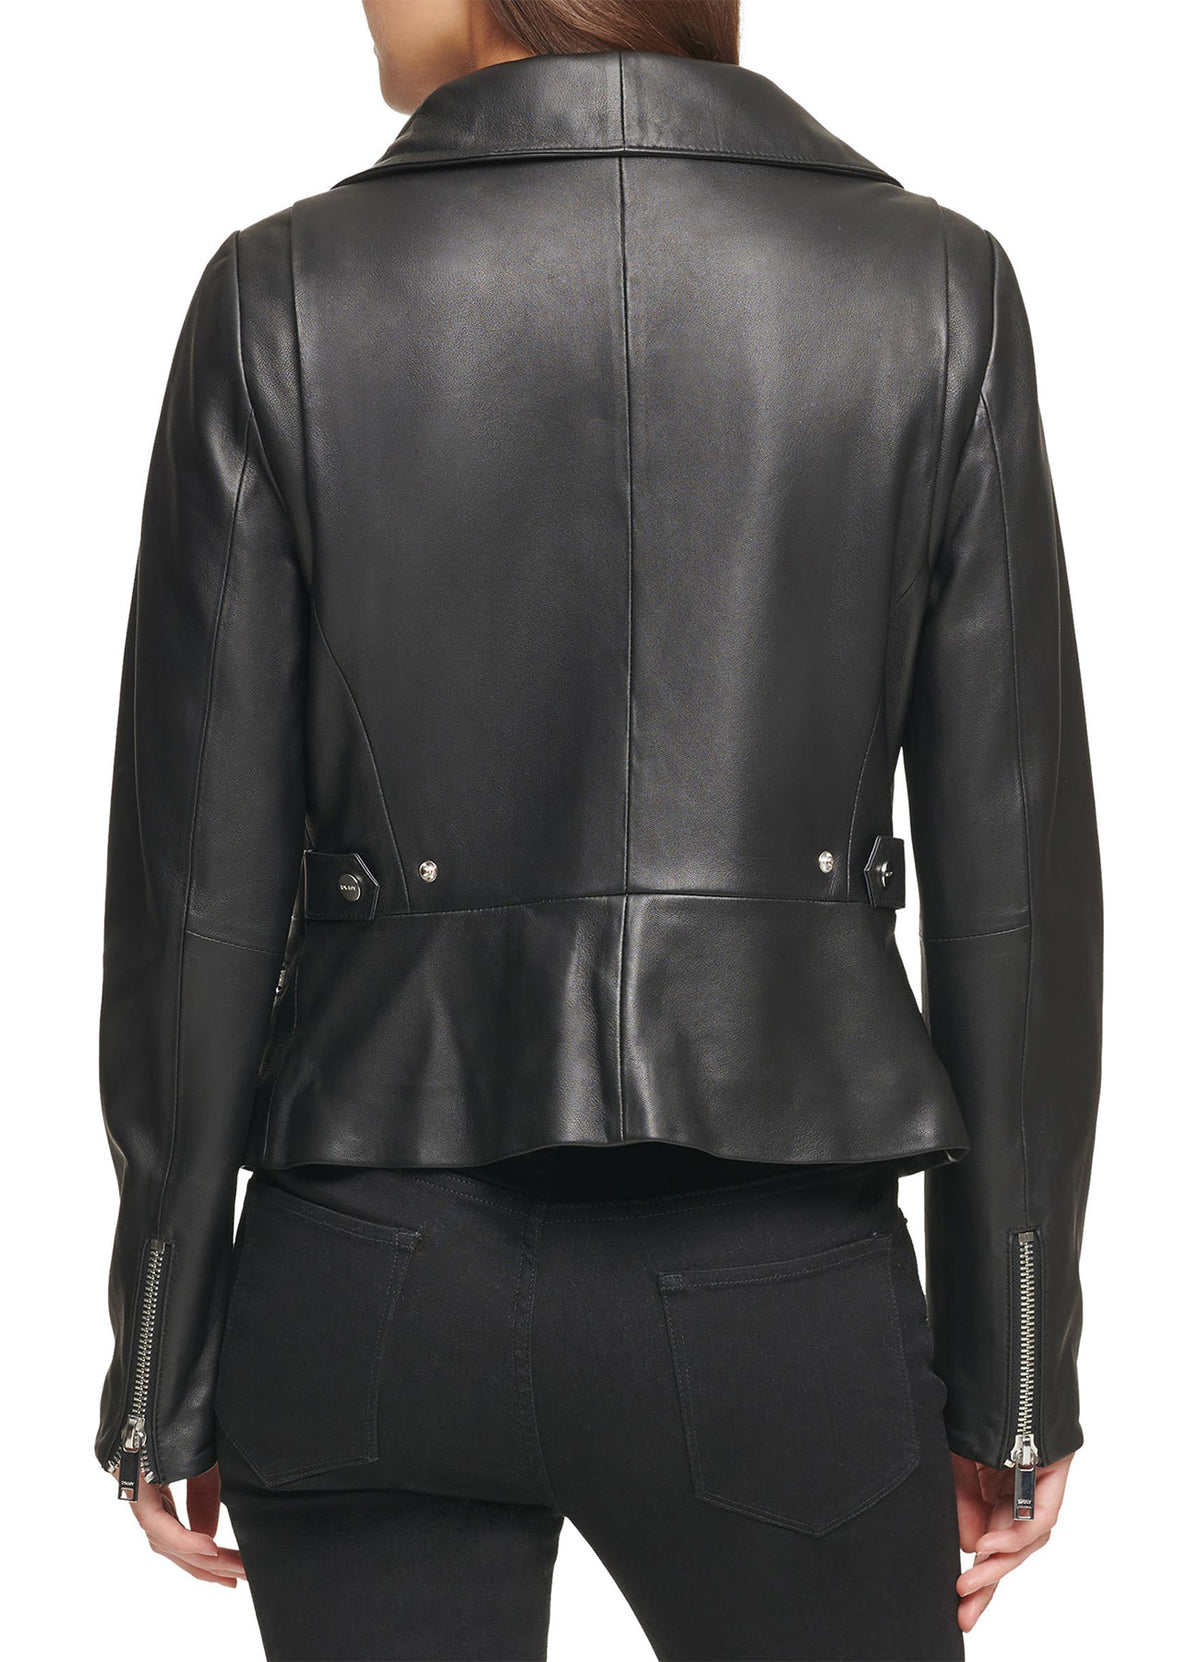 Womens Stylish Black Leather Jacket | Shop Now!